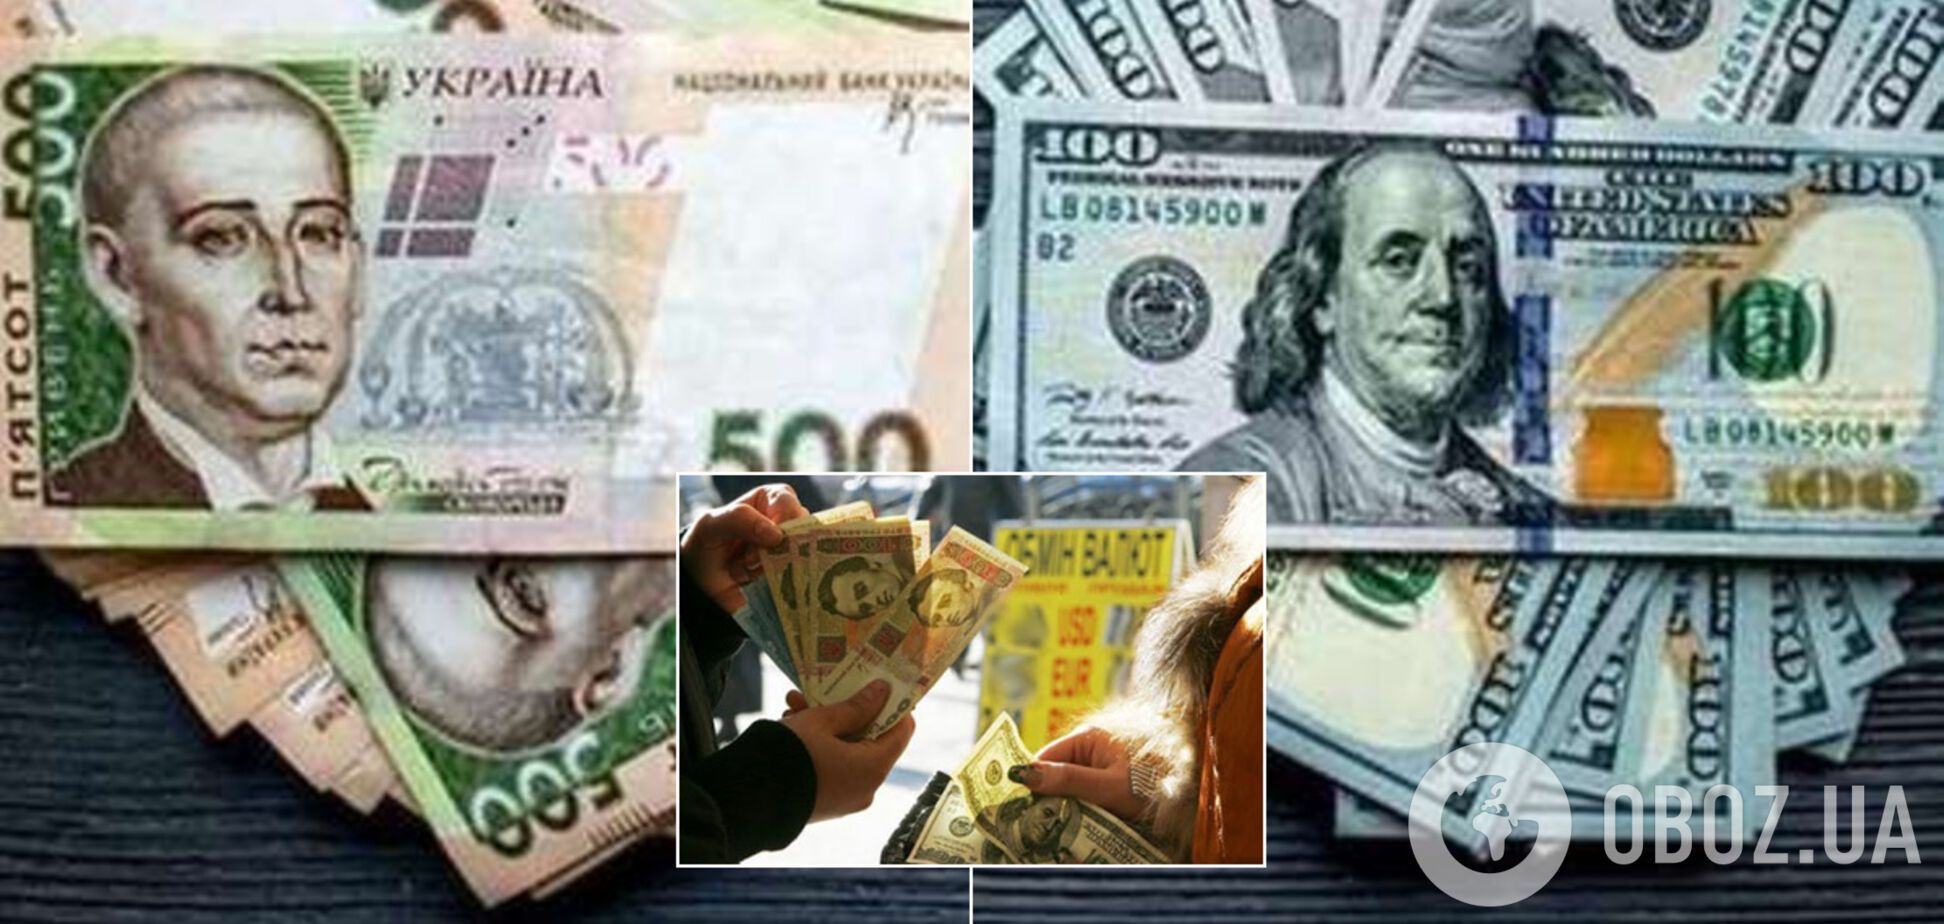 Официальный доллар не изменился, но взлетел на черном рынке: курс валют в Украине